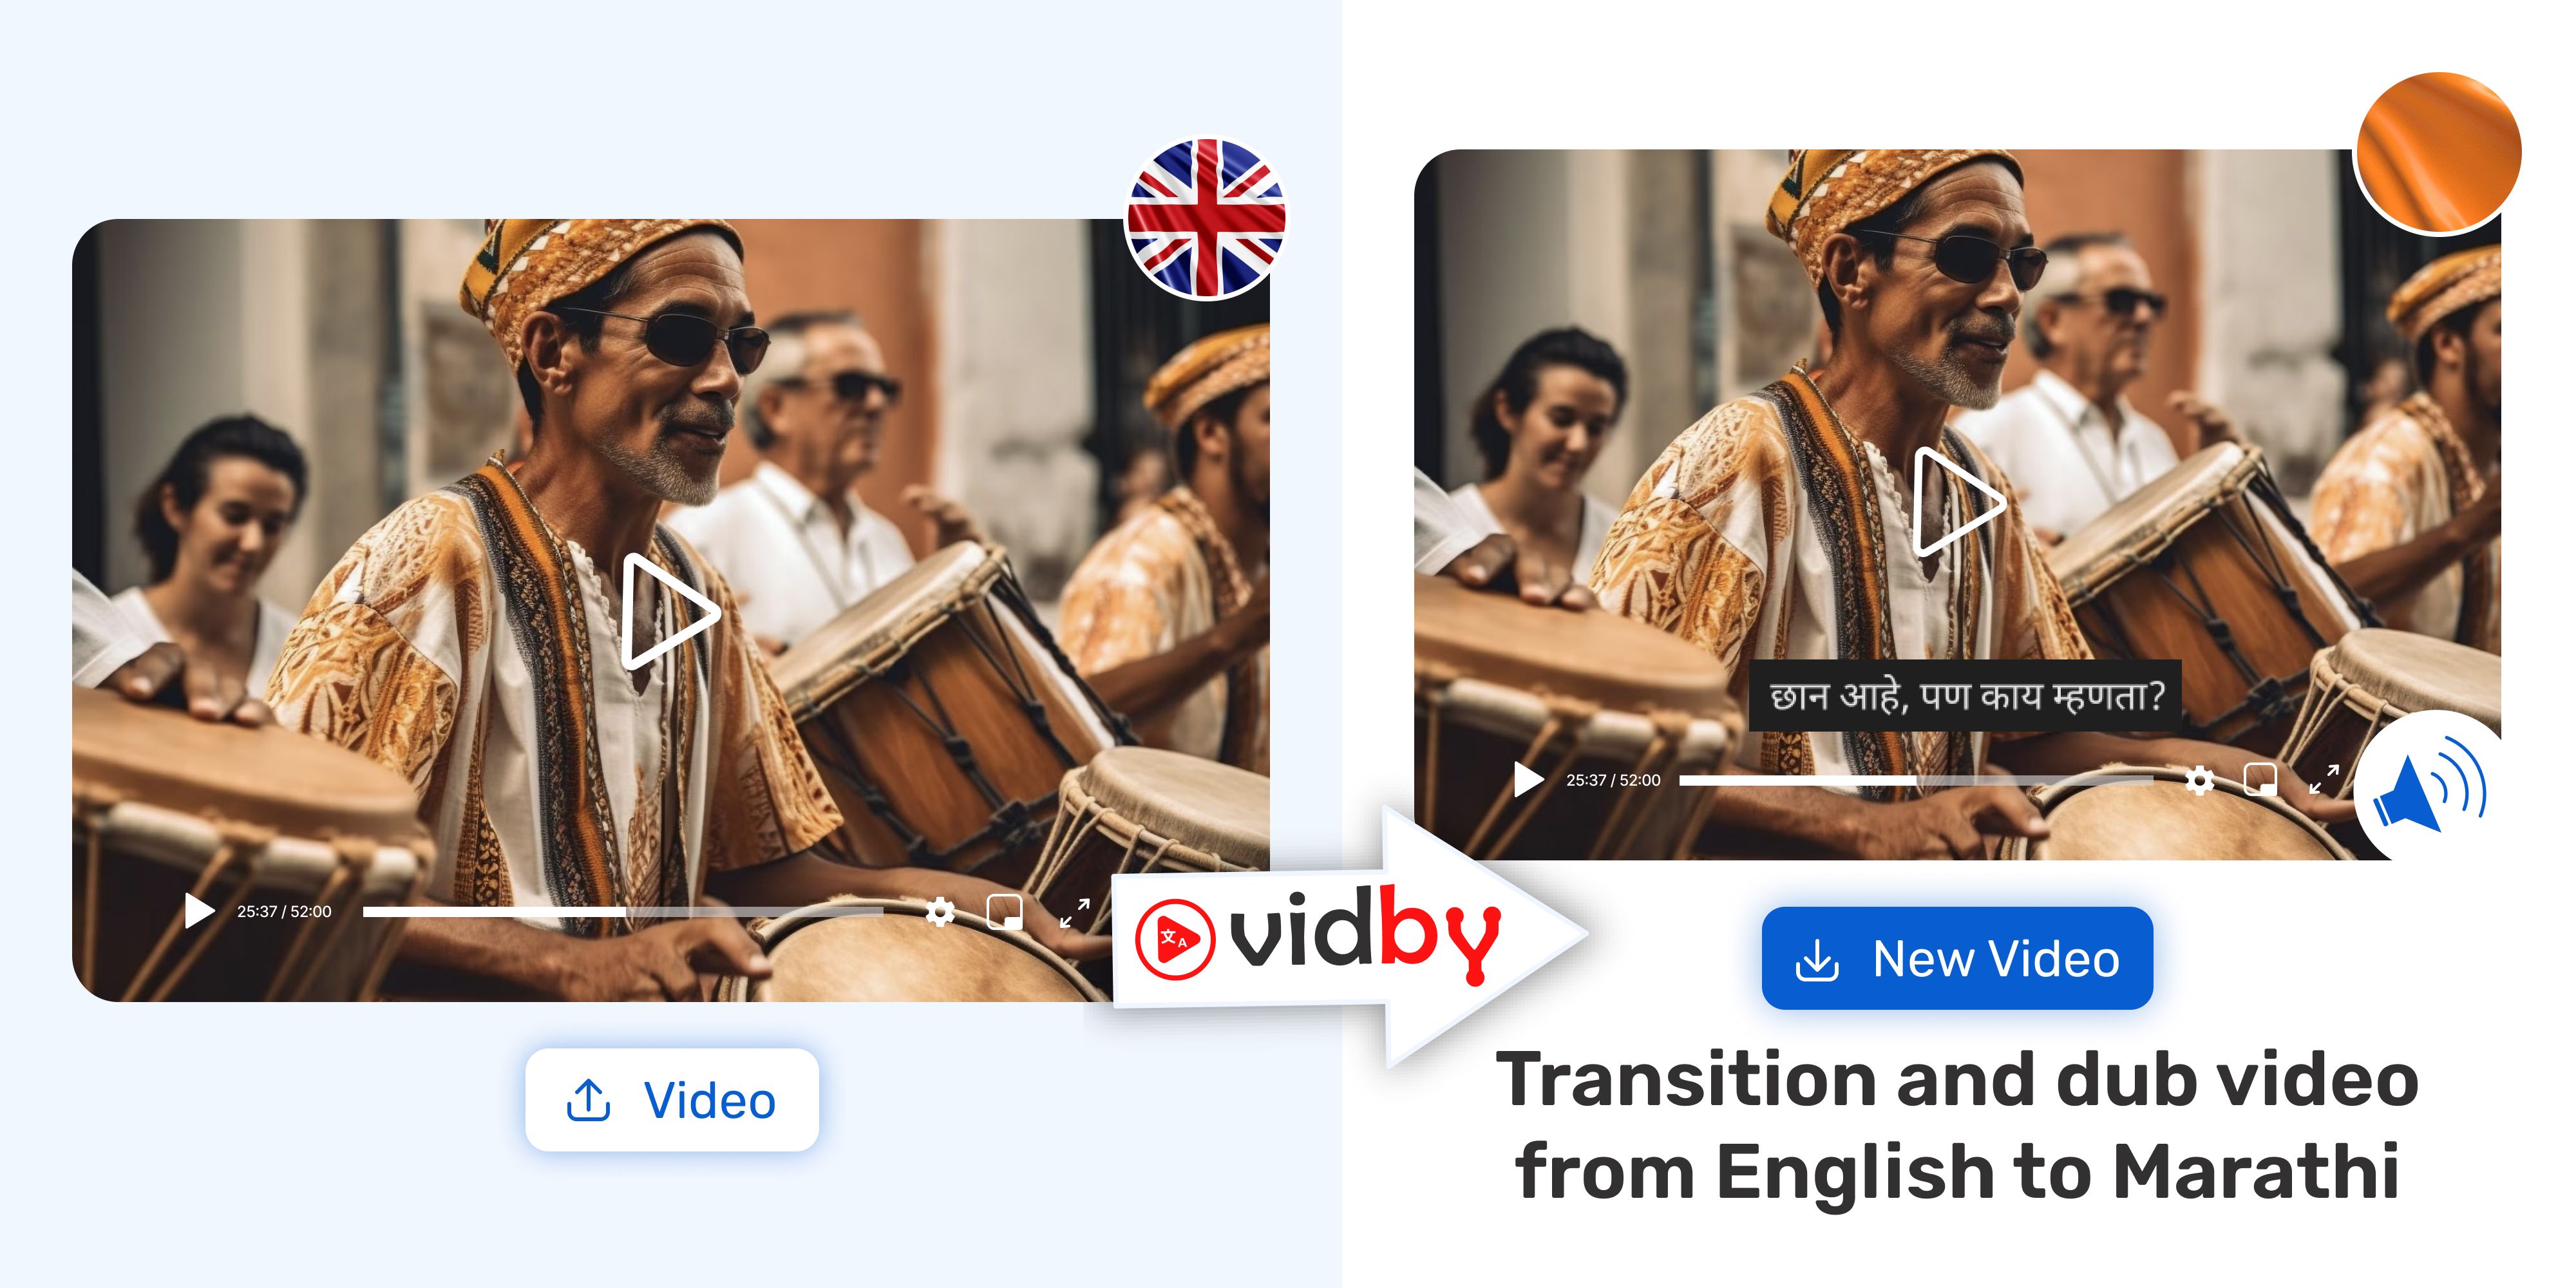 Translate English video to Marathi